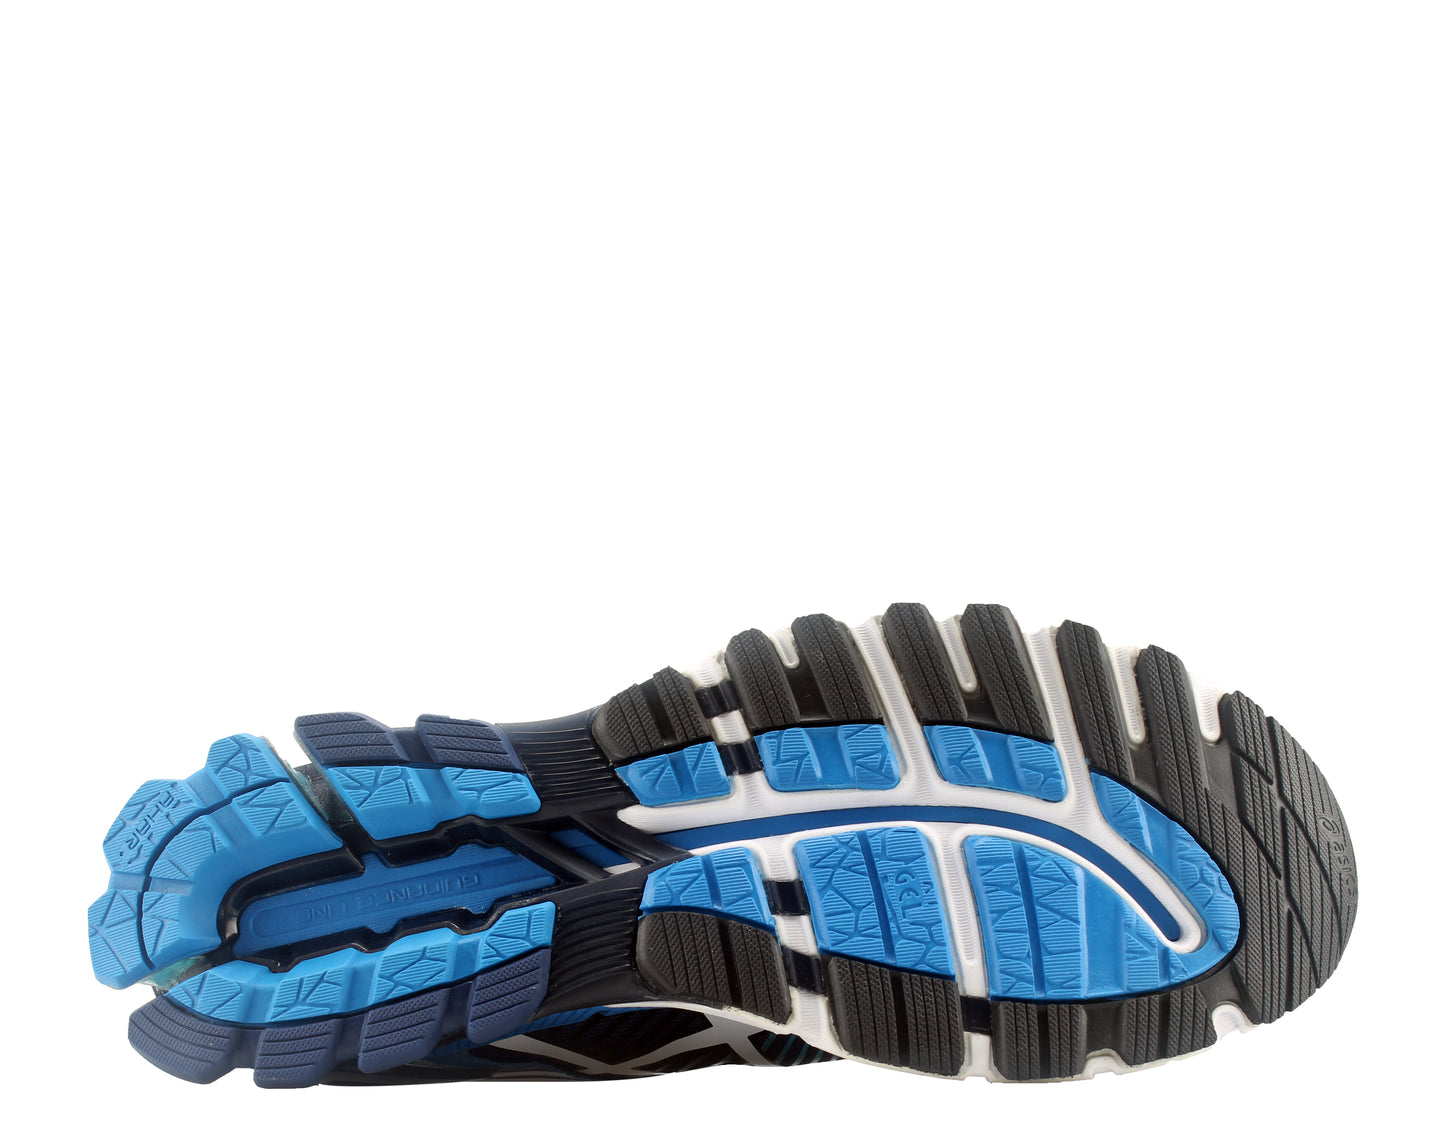 Asics Gel-Kensei 6 Men's Running Shoes